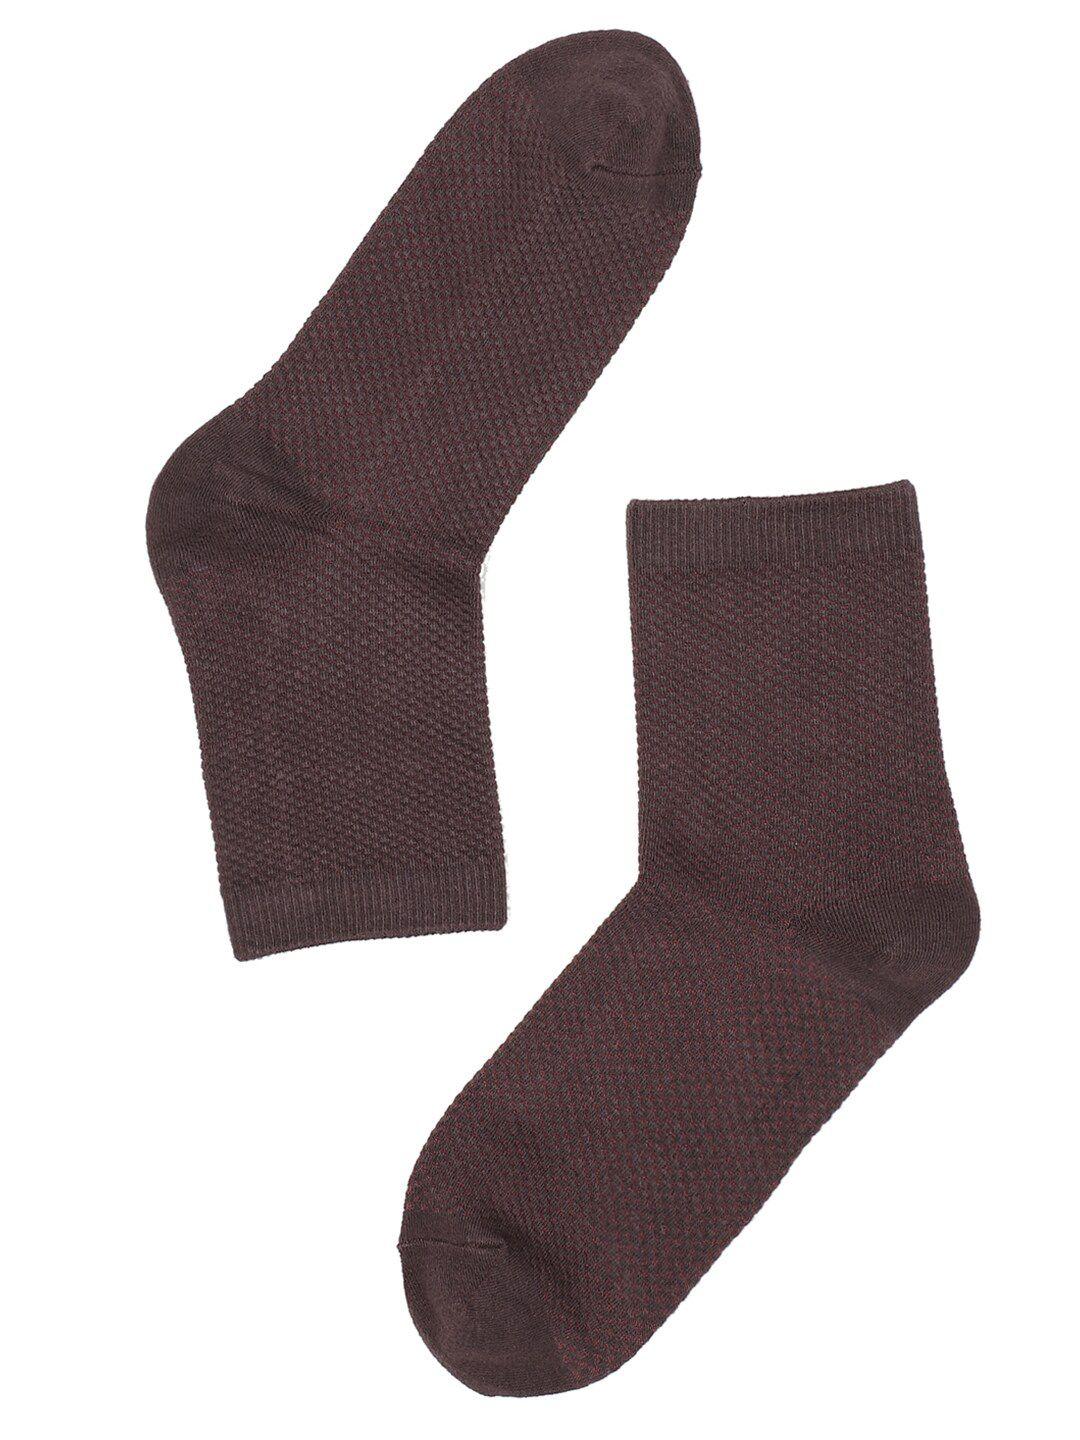 toffcraft men burgundy-colored solid calf-length socks